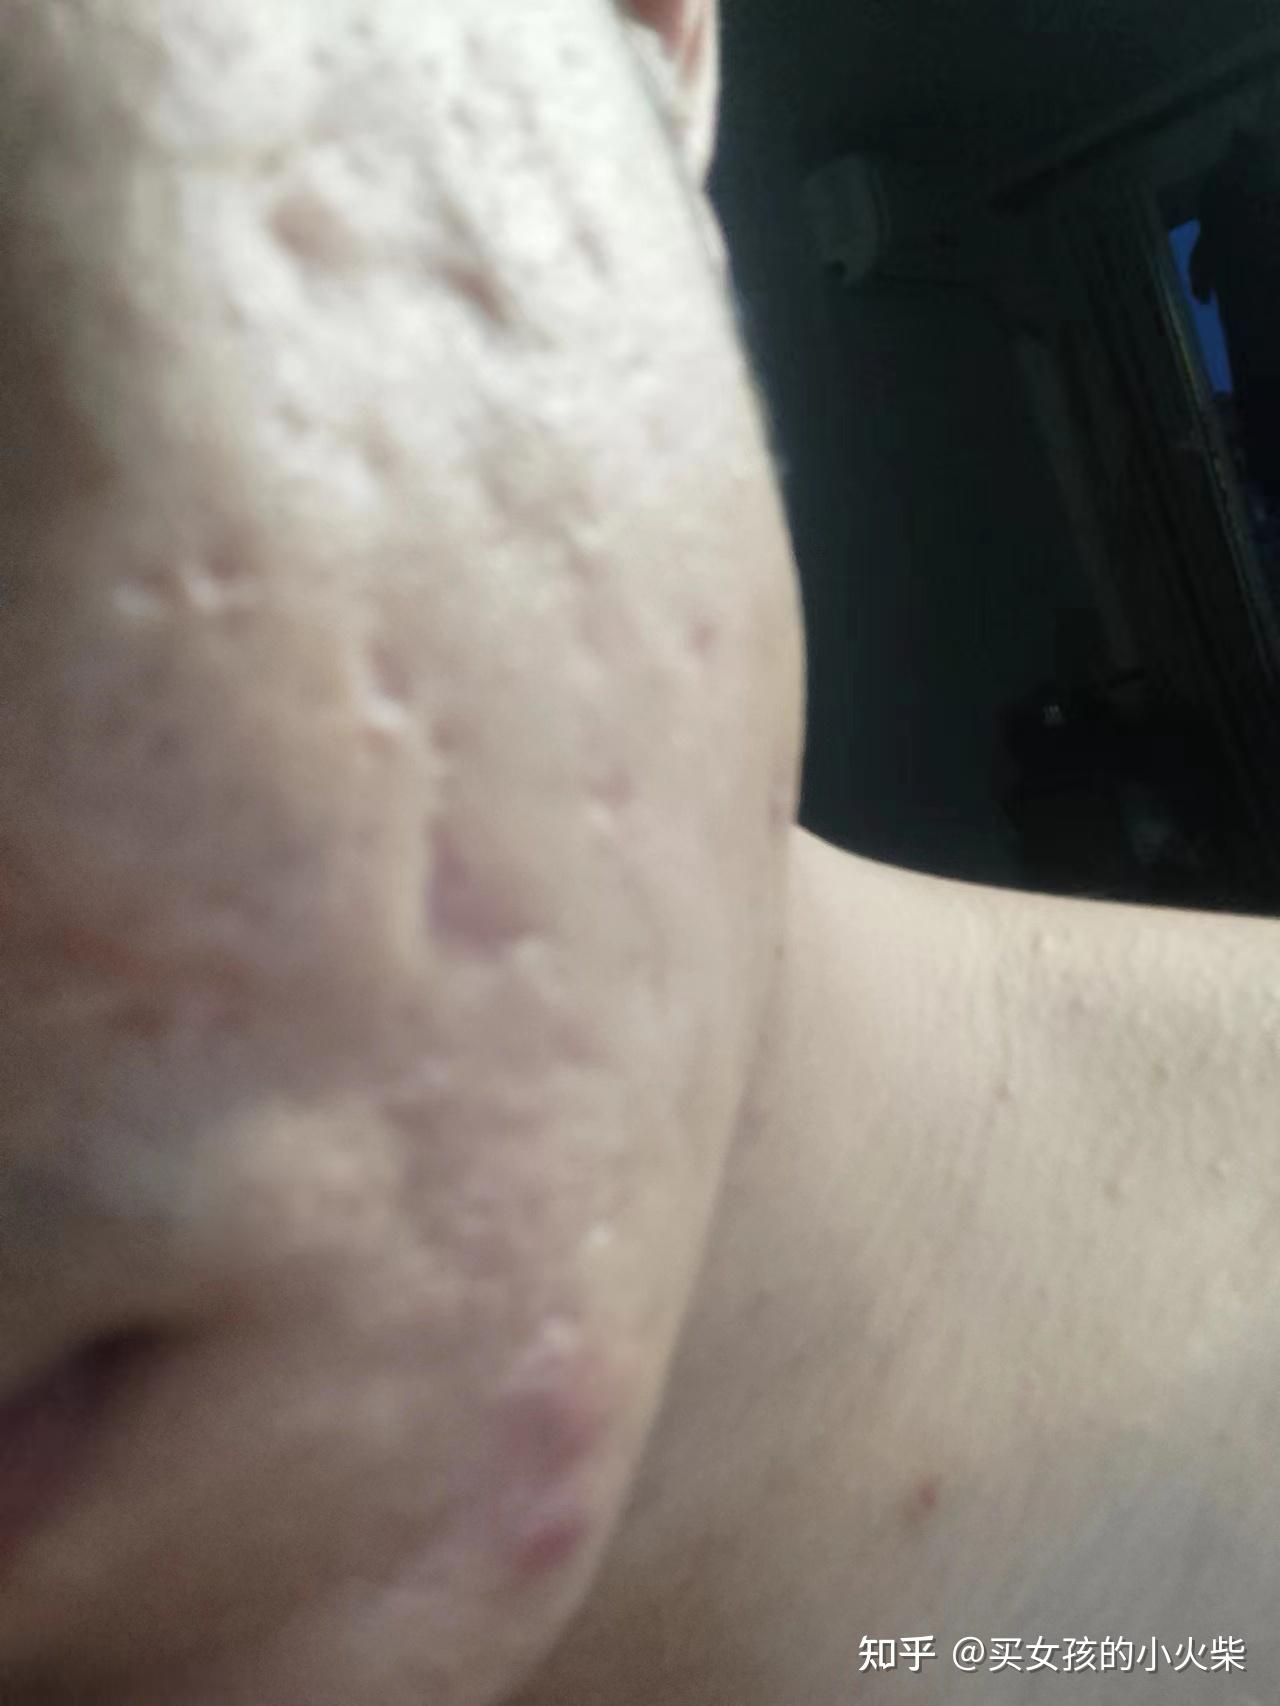 脸上有丘疹和痤疮的发炎皮肤。痤疮造成的疤痕照片摄影图片_ID:309094291-Veer图库